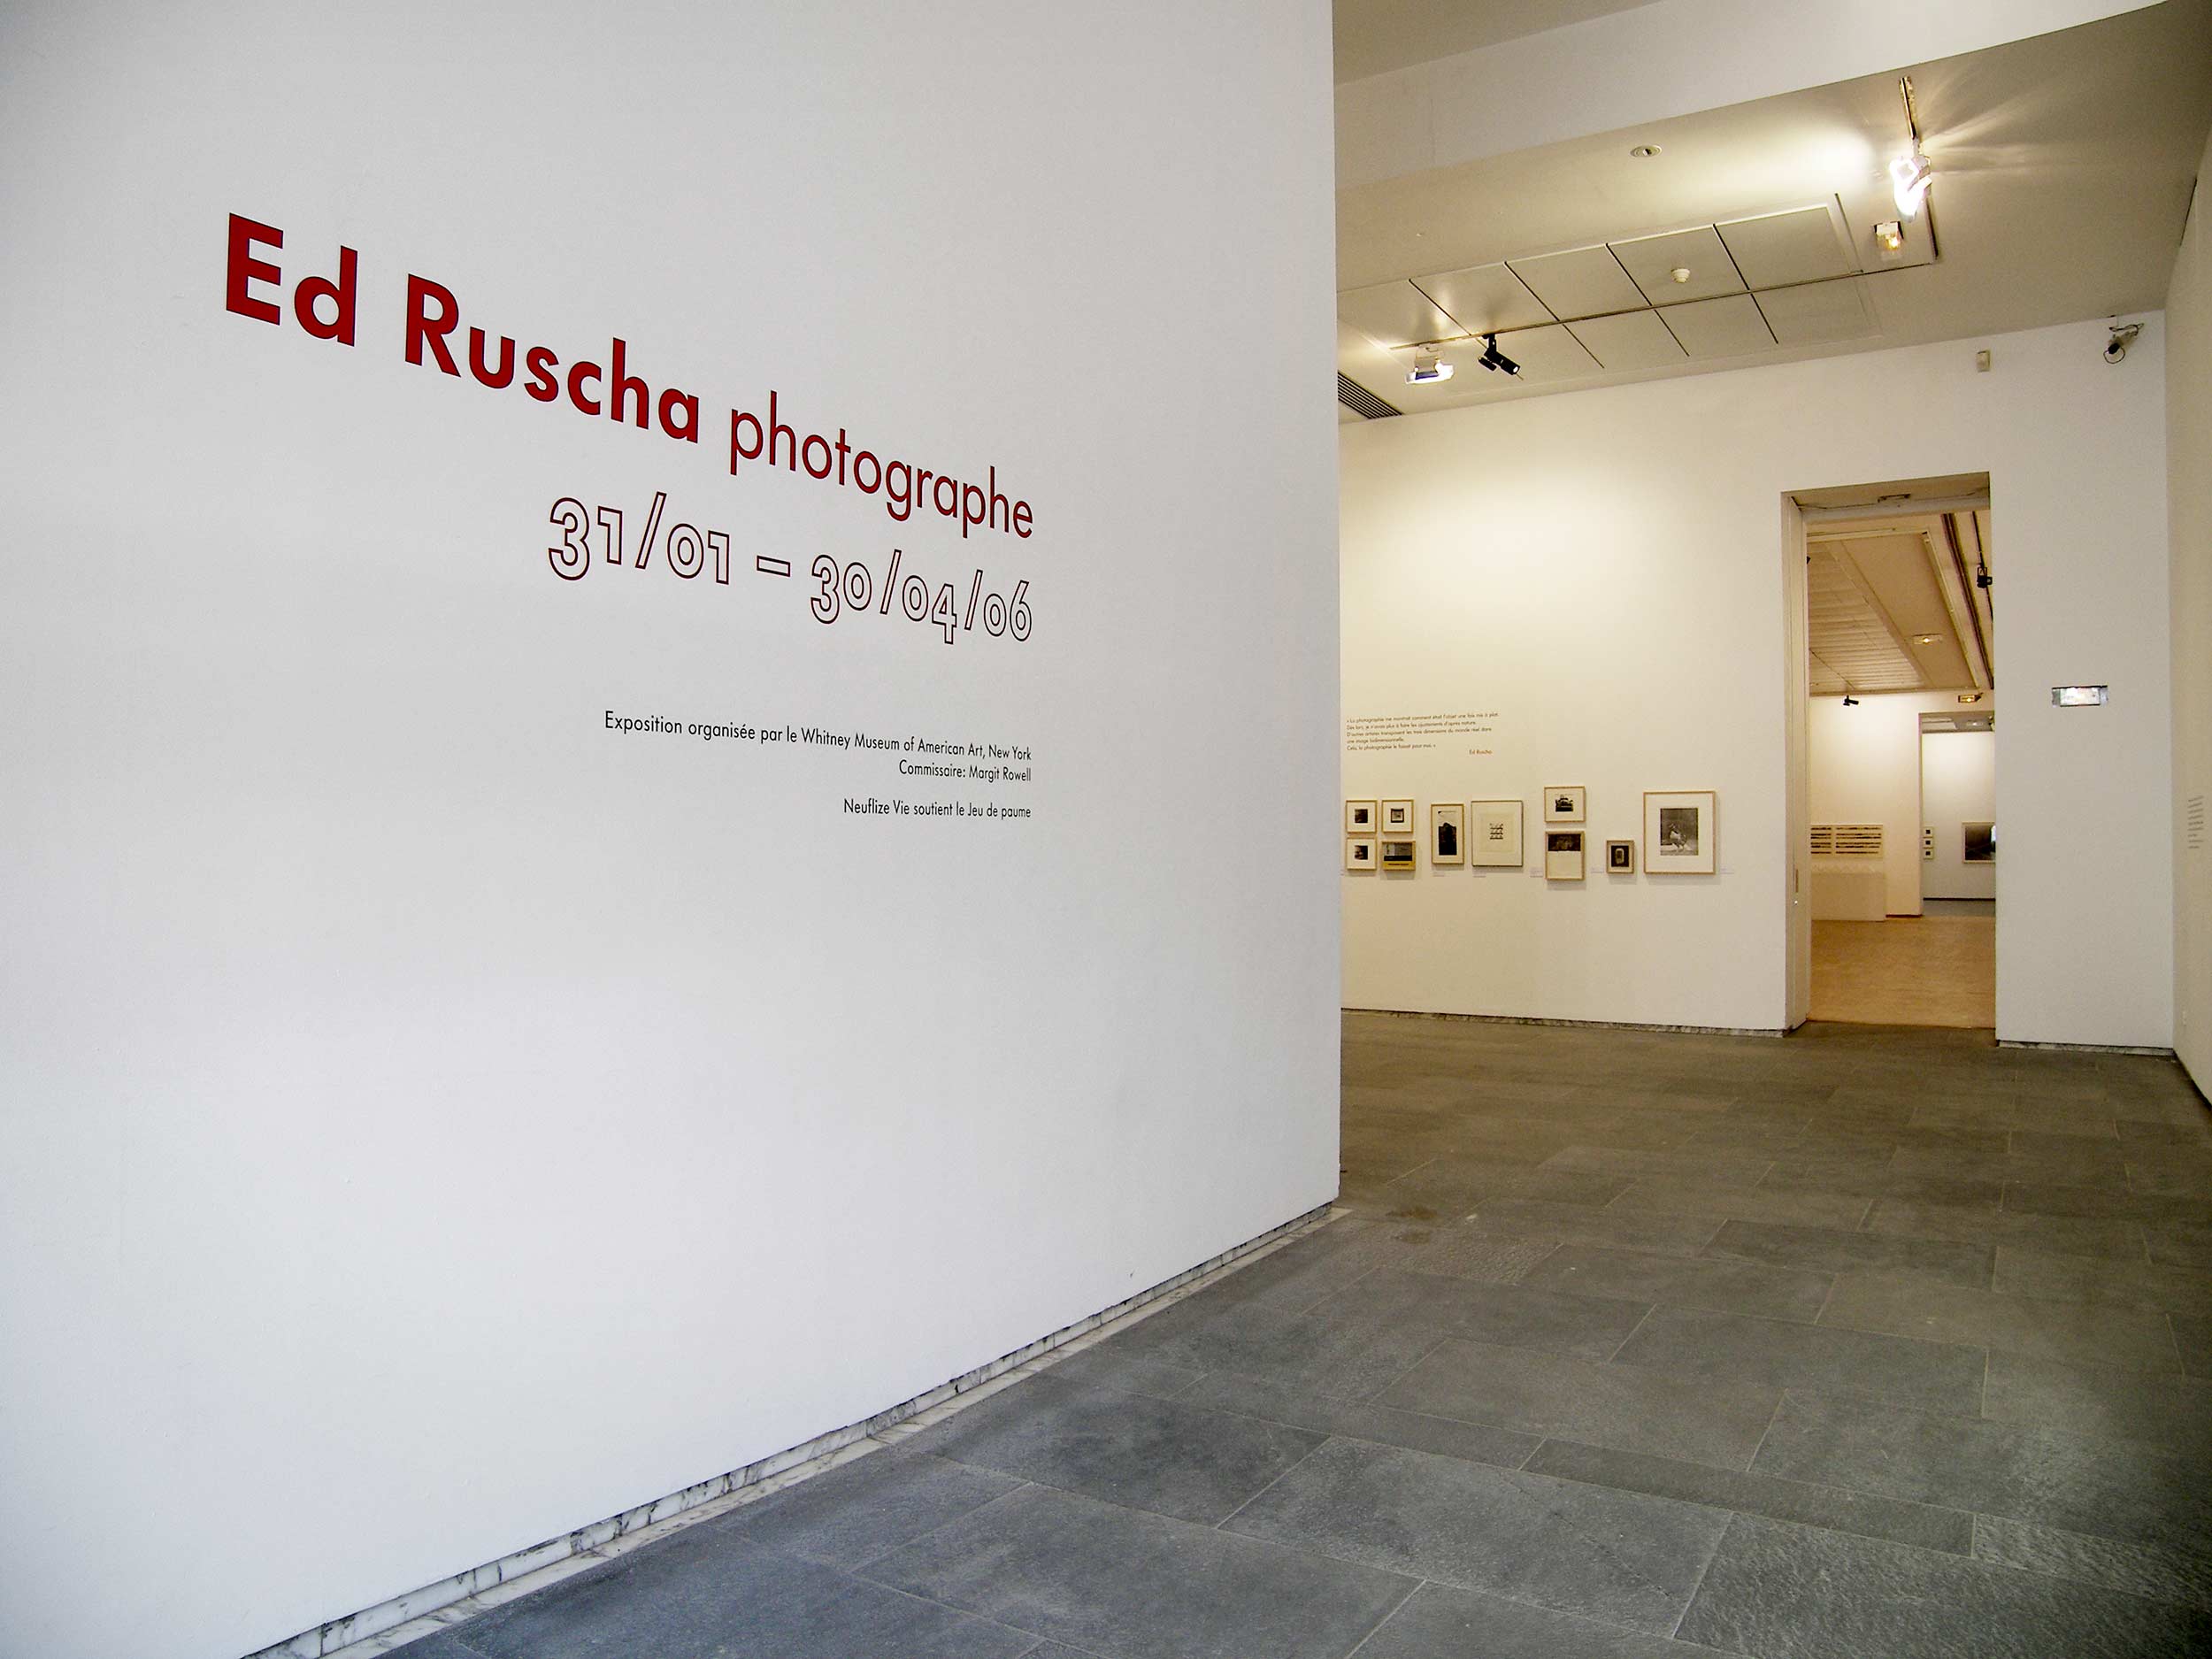 Vue de l'exposition <em>Ed ruscha, photographe</em>